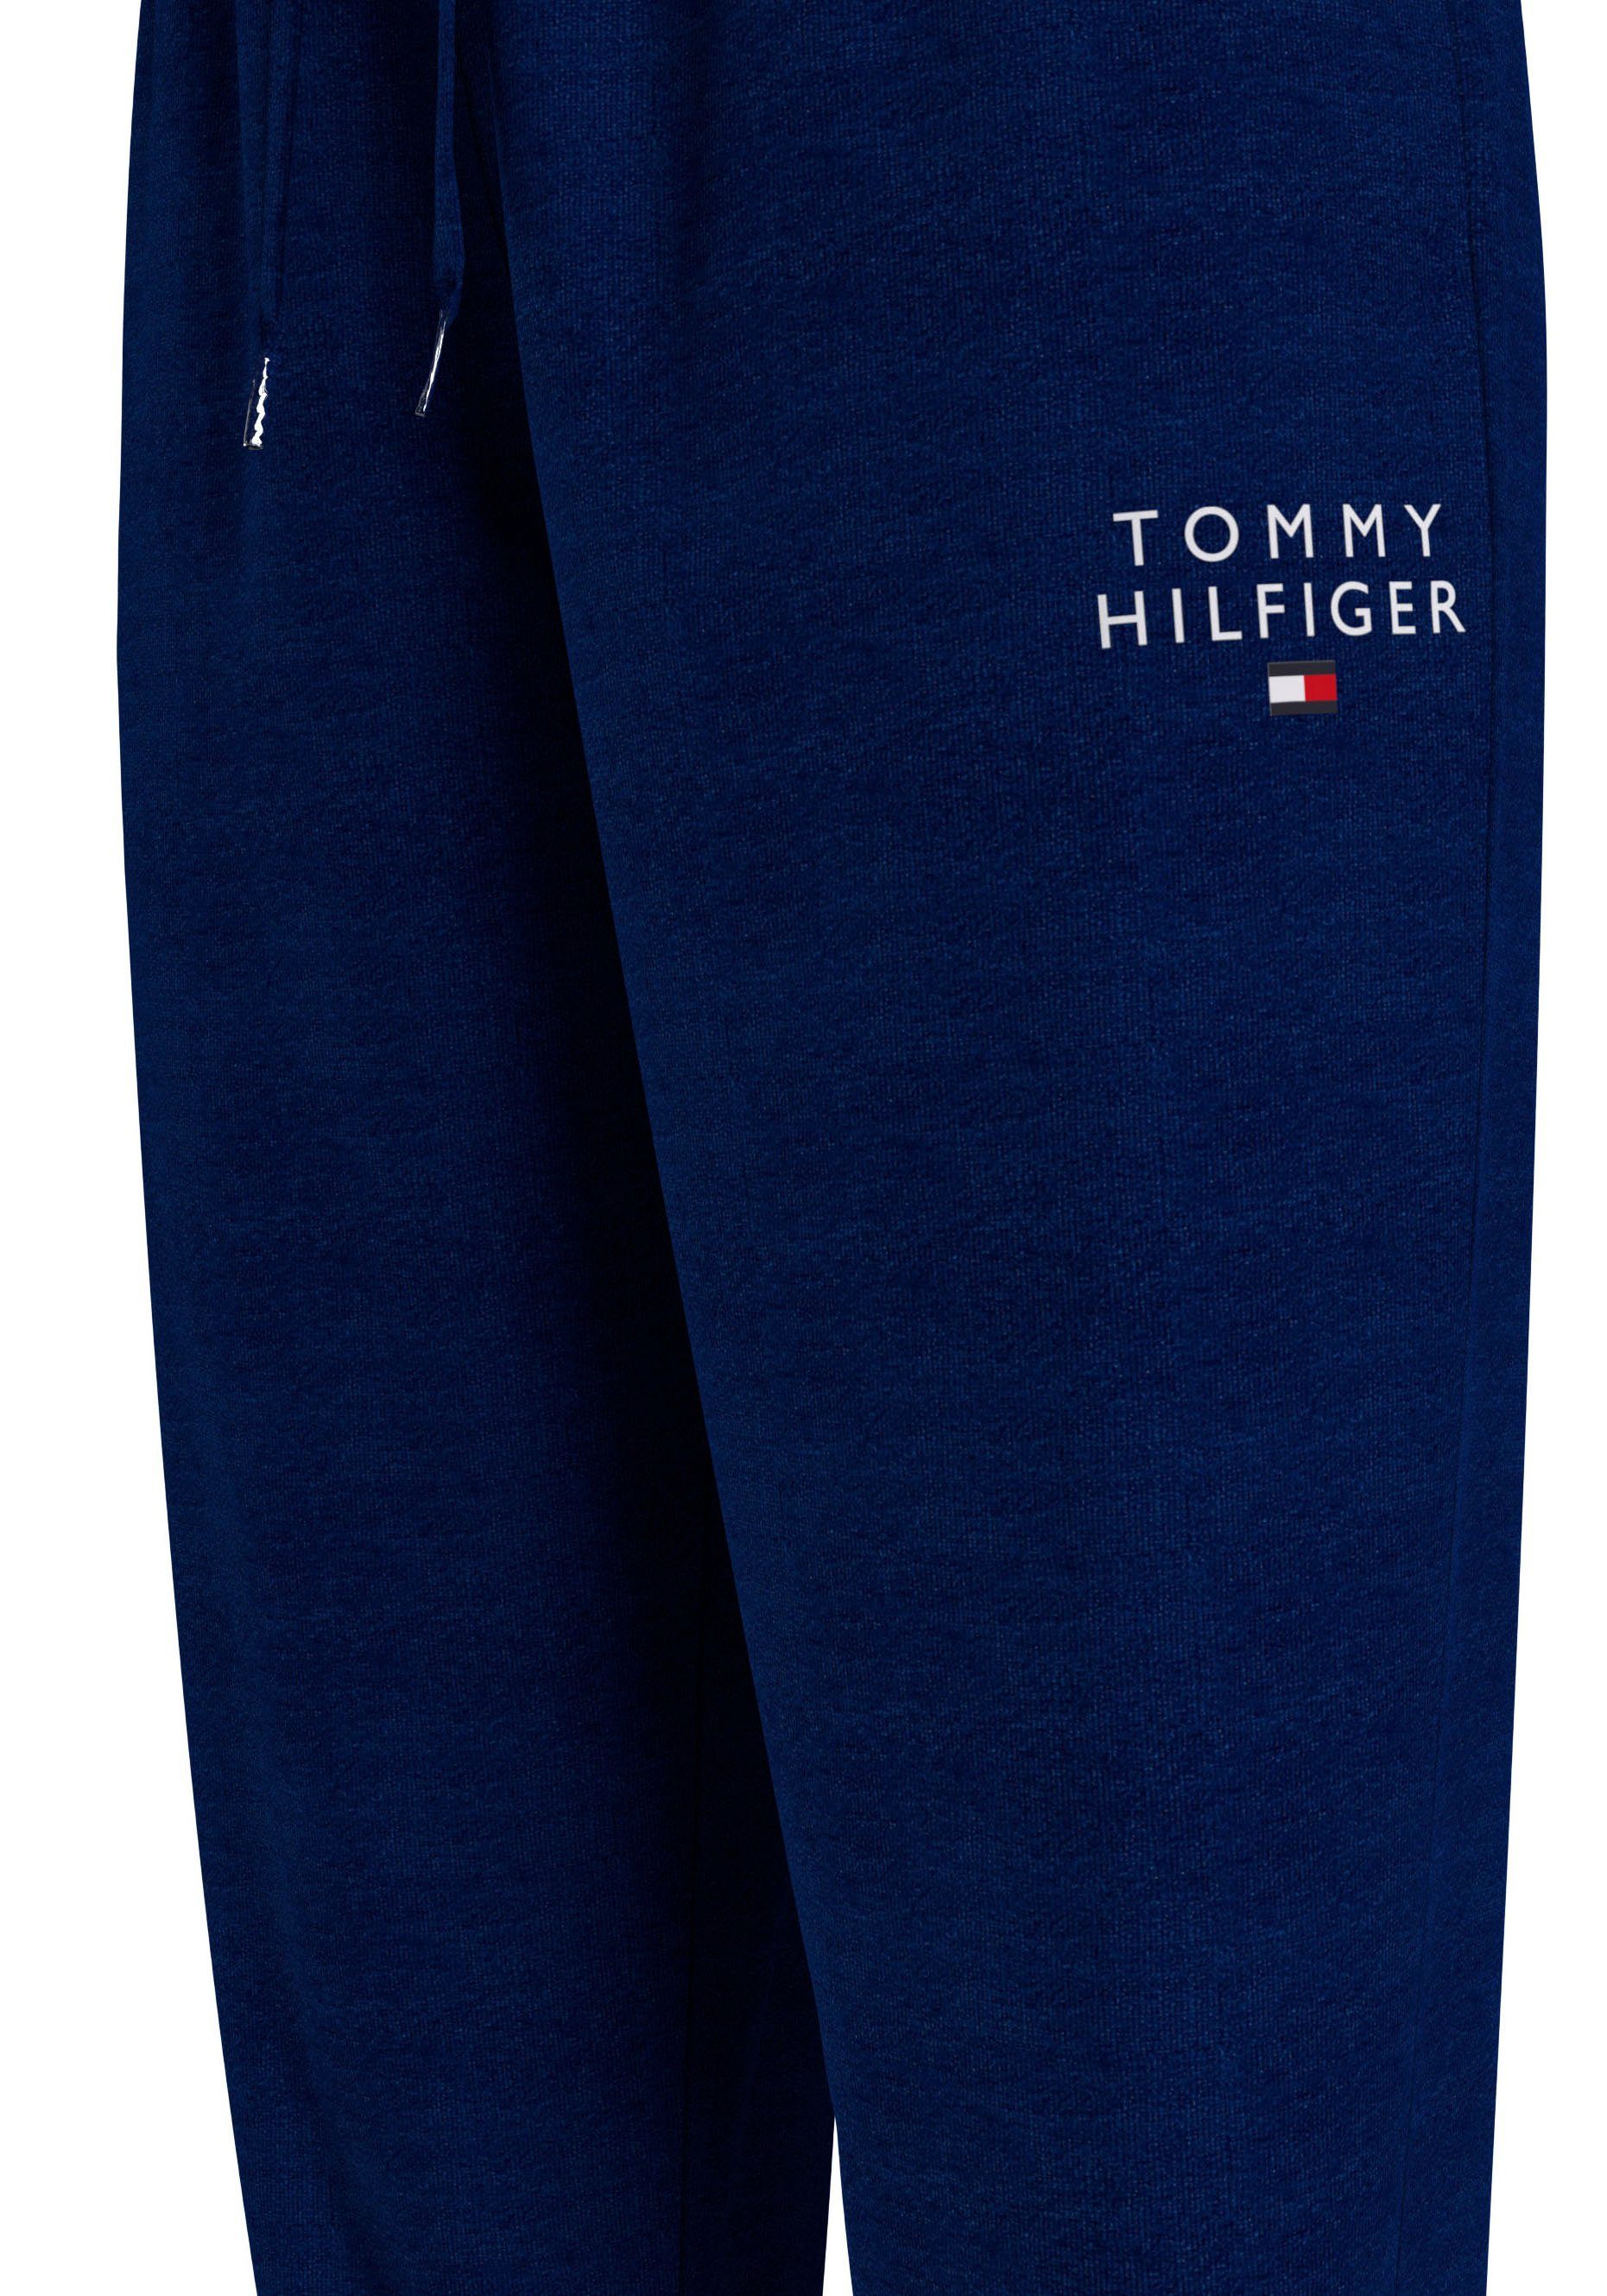 Underwear PANTS Hilfiger Tommy mit Tommy Markenlogo-Aufdruck TRACK Hilfiger Sweathose